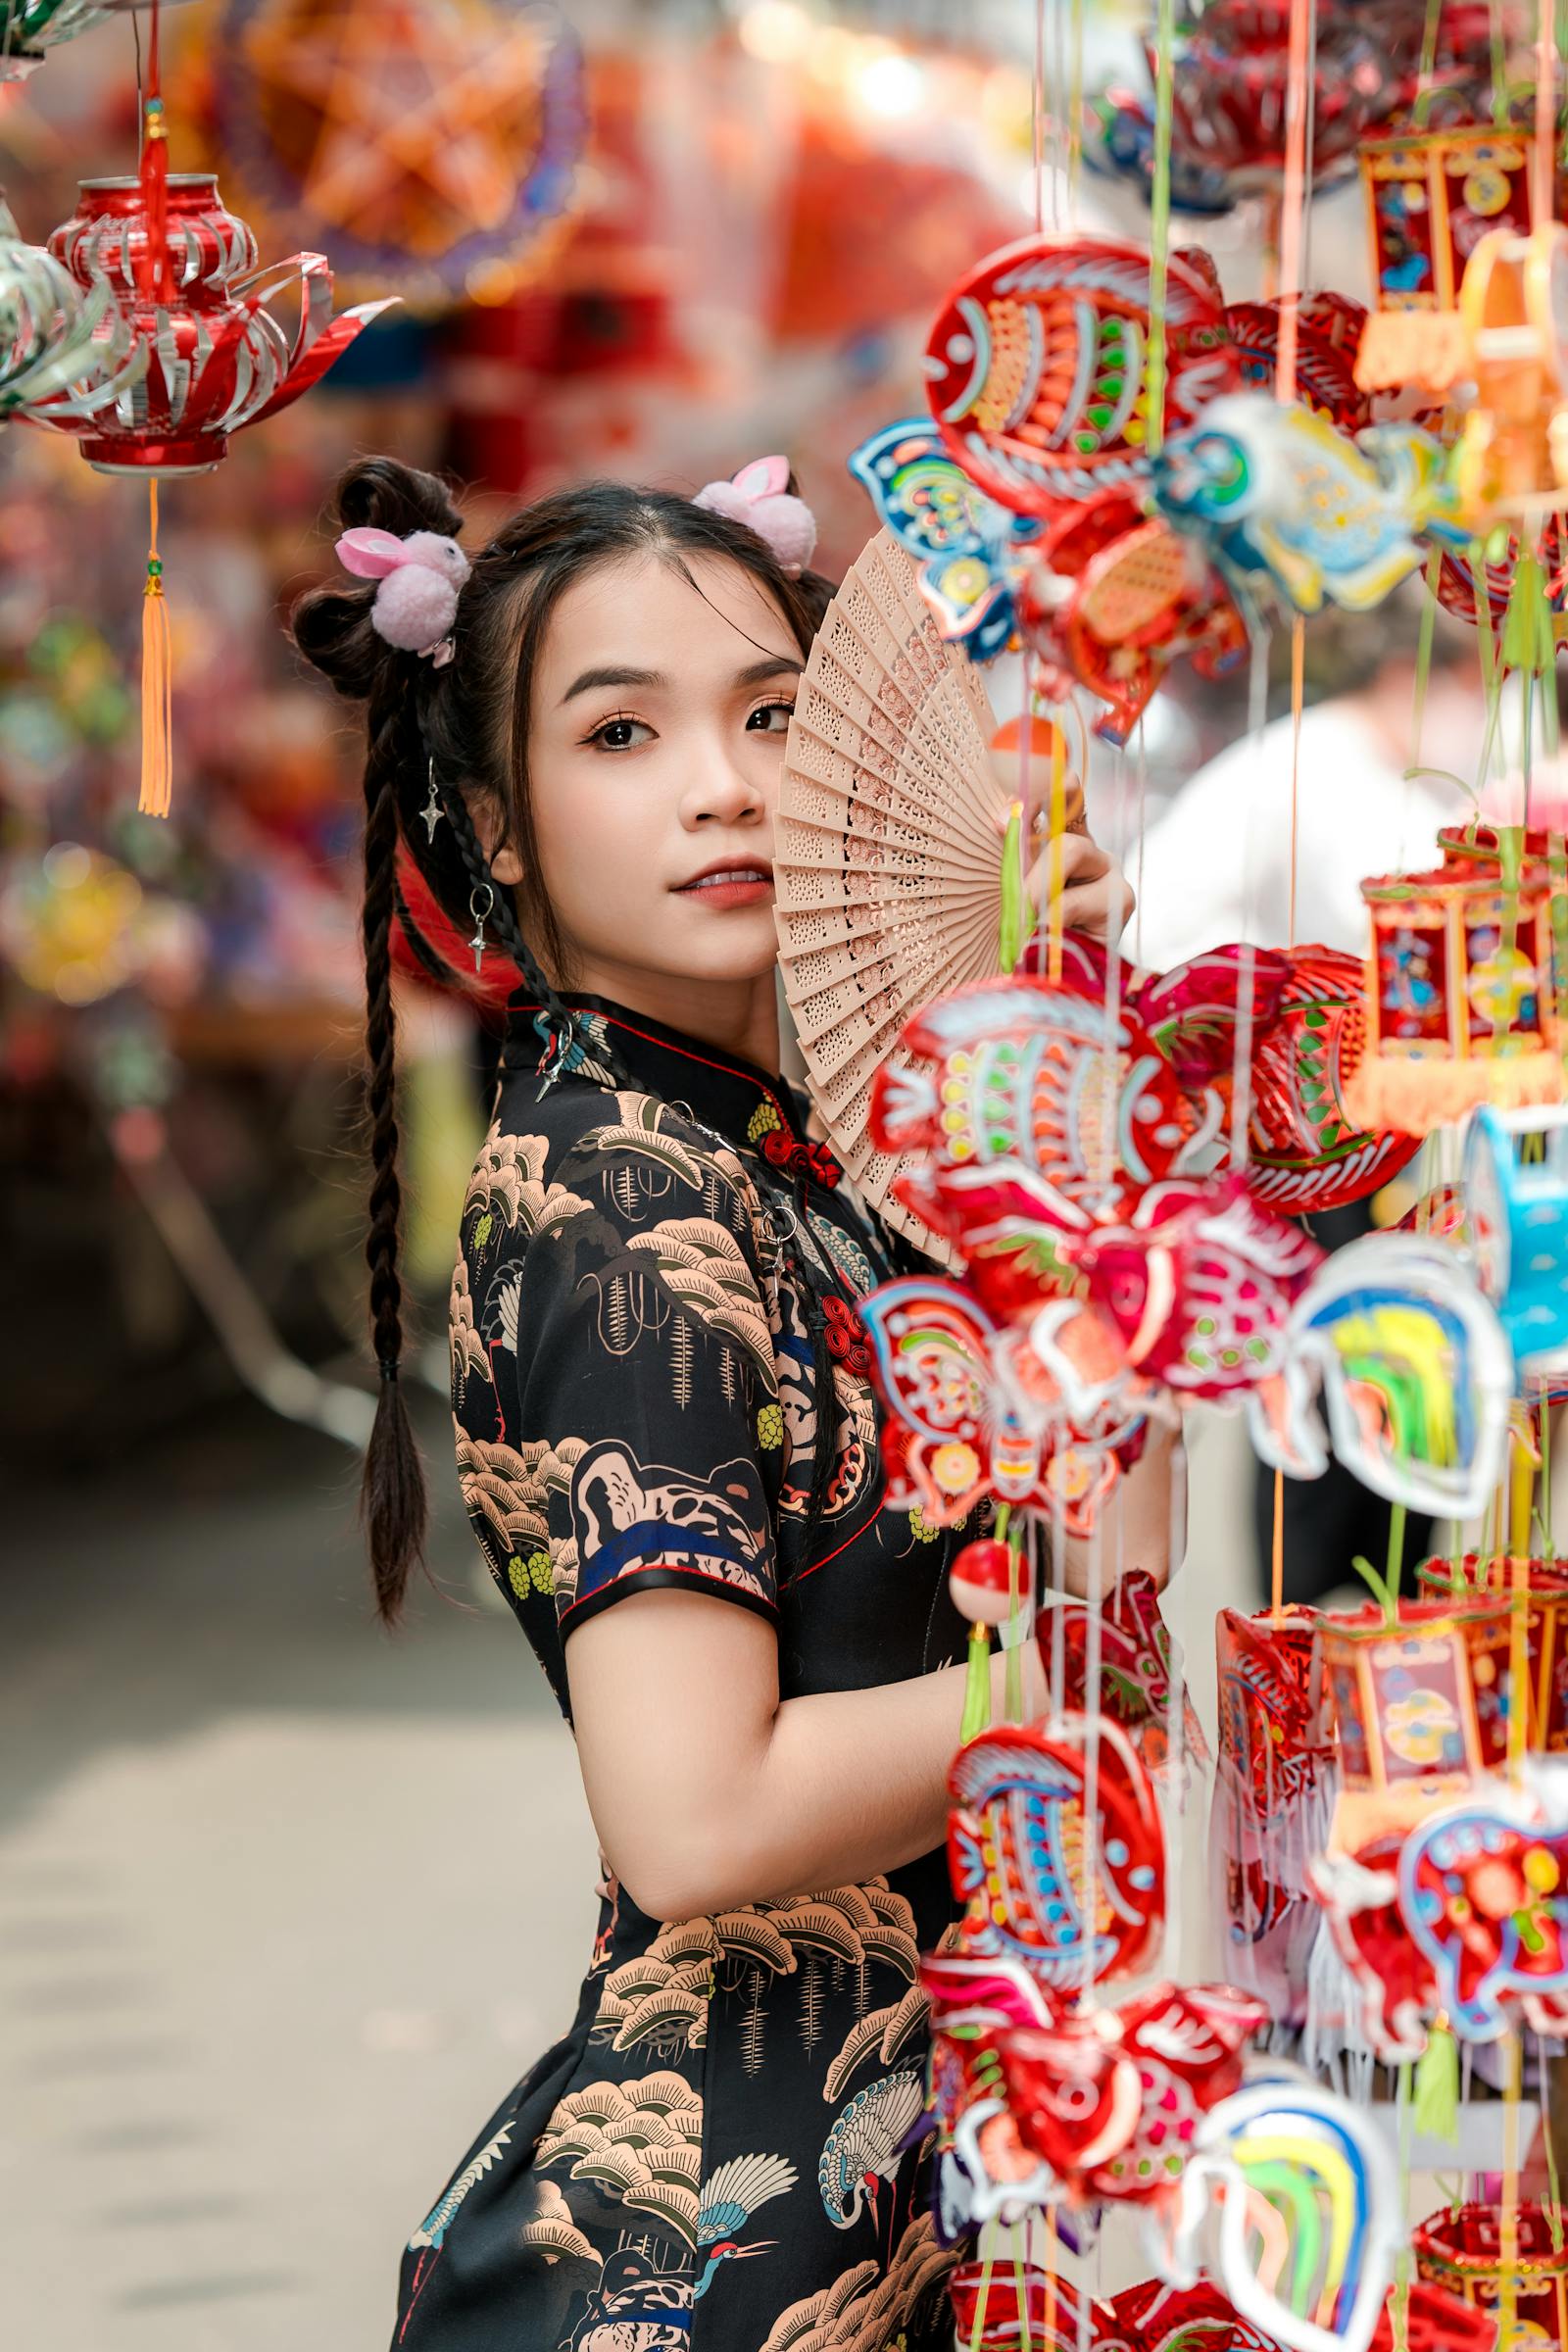 1,000,000+张最精彩的“中国女人”图片 · 100%免费下载 · Pexels素材图片